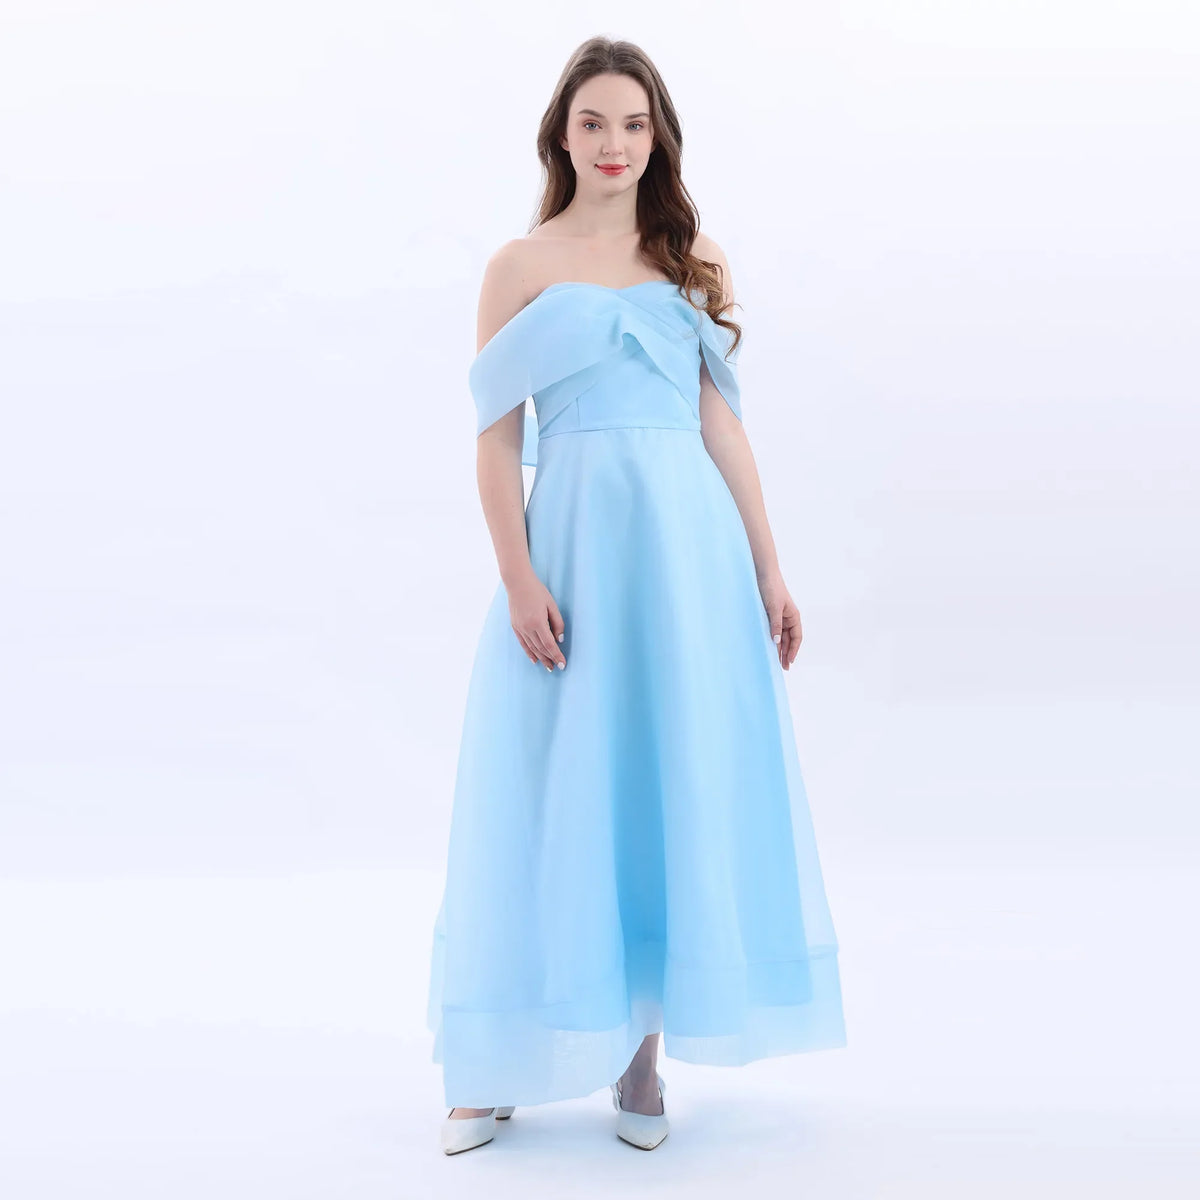 Sky Blue Evening Dress For Women